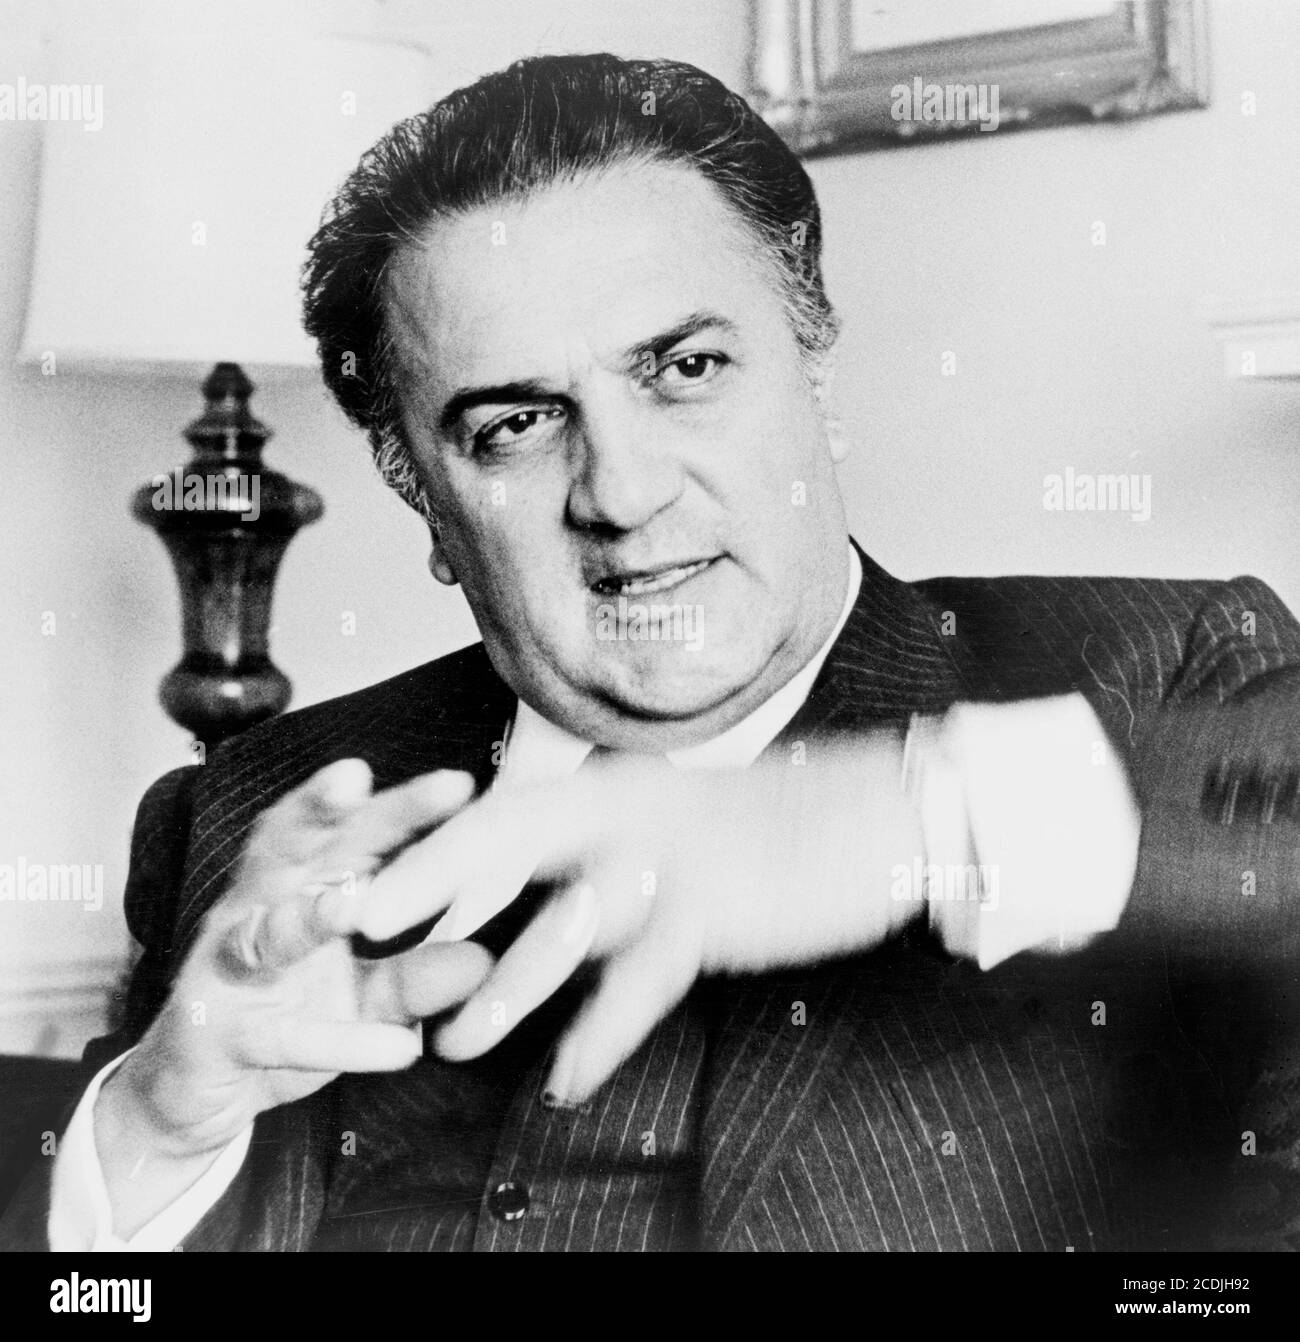 Federico Fellini. Portrait du réalisateur italien Federico Fellini (1920-1993) de Walter Albertin, vers 1965 Banque D'Images